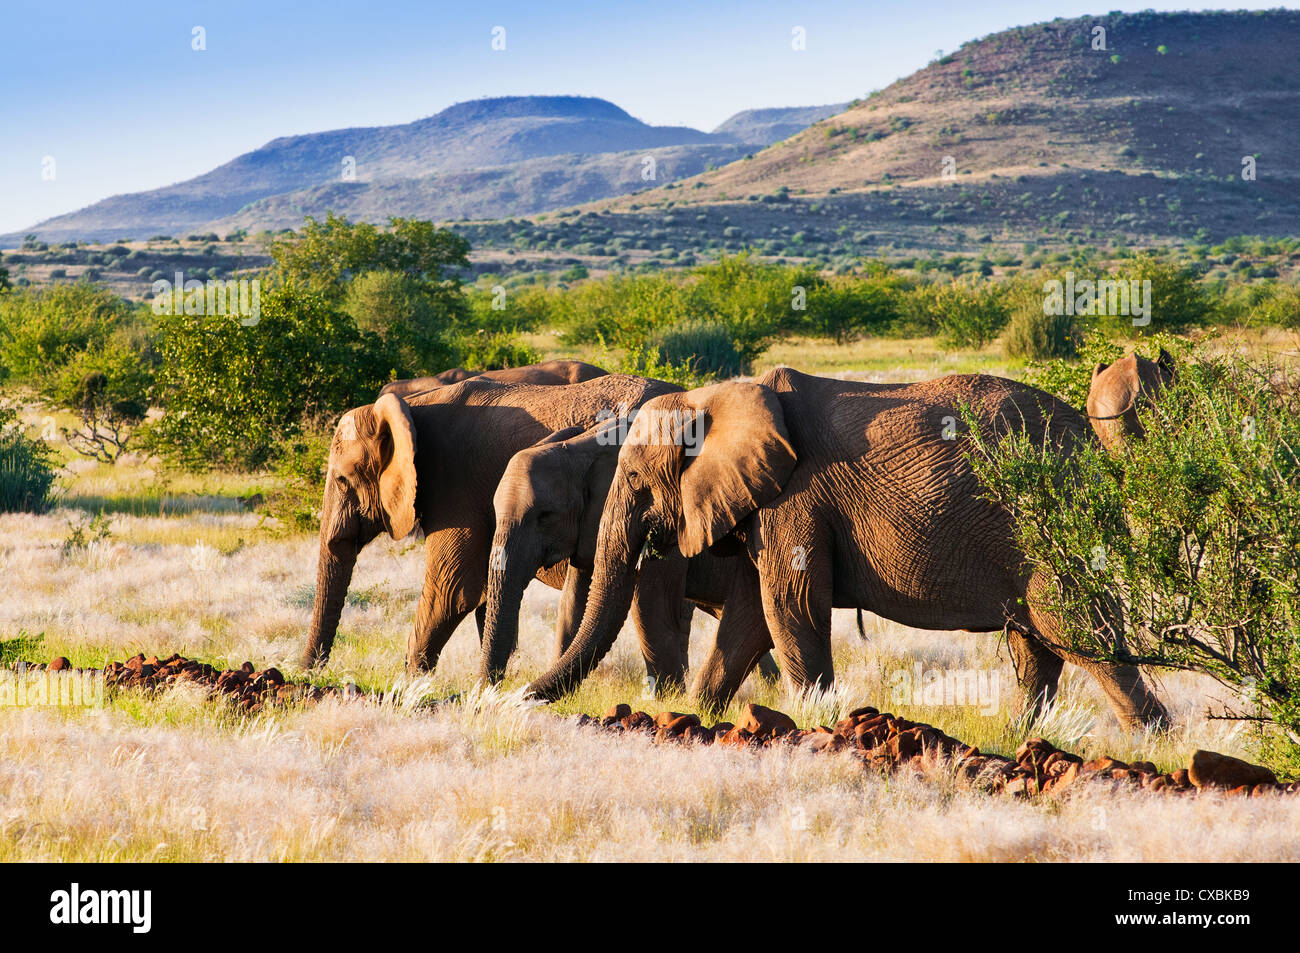 L'éléphant africain (Loxodonta africana), Damaraland, région de Kunene, Namibie, Afrique Banque D'Images